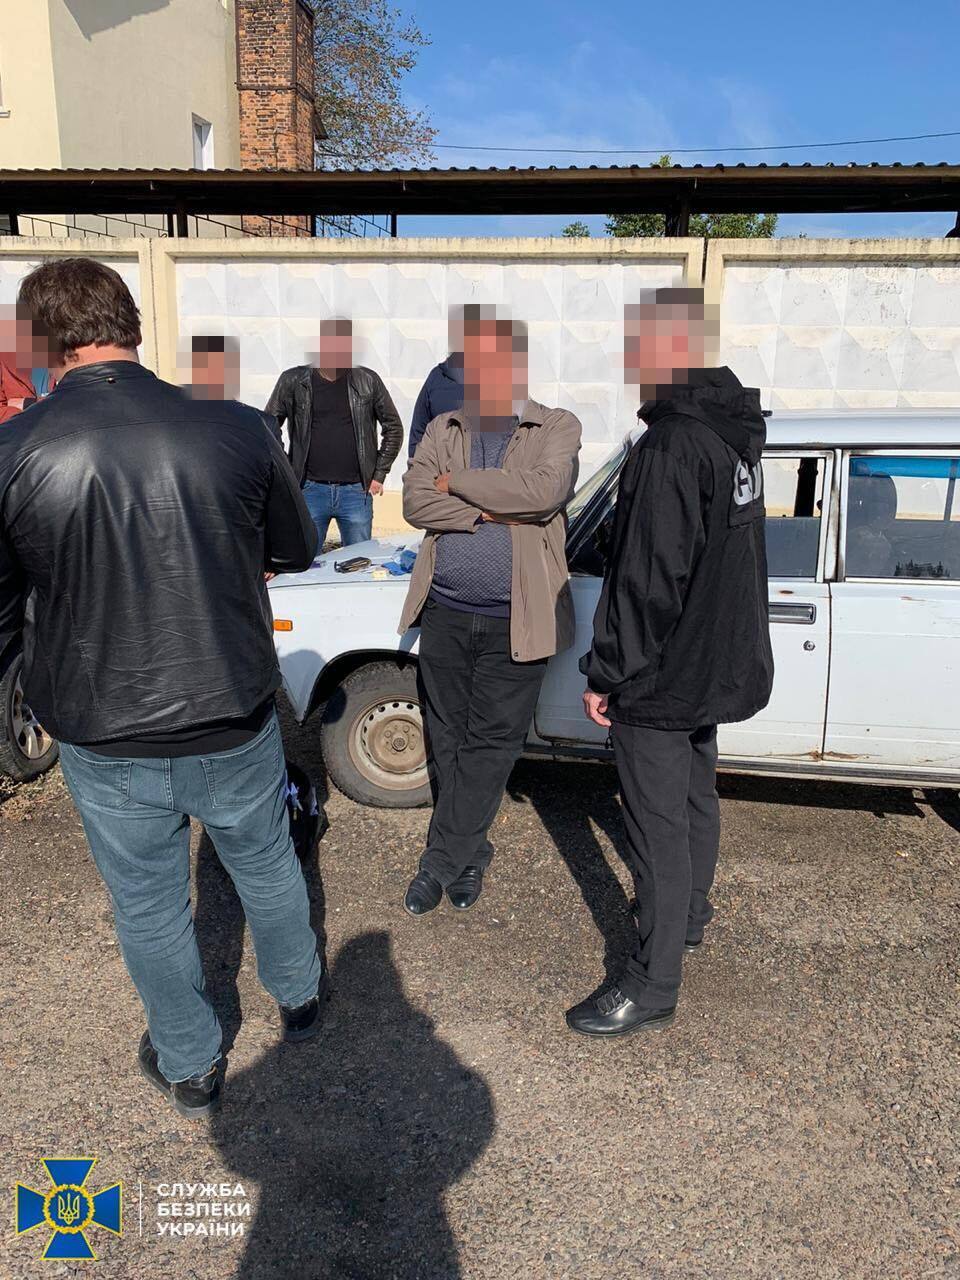 СБУ задержала на взятке чиновника мэрии Подольска